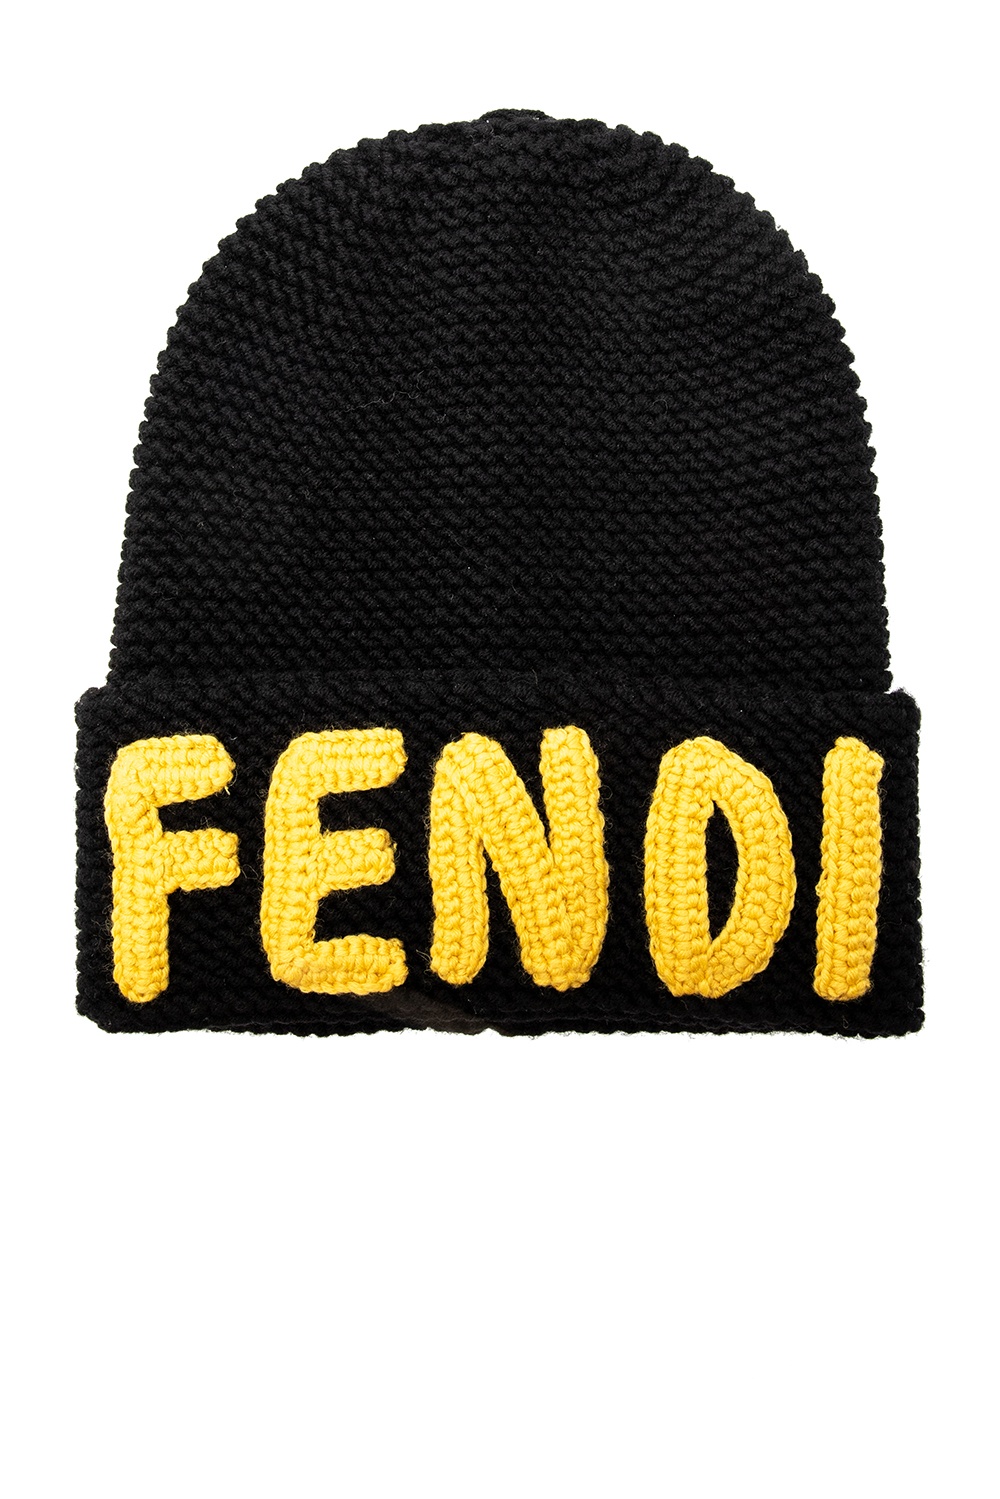 Fendi logo machine embroidery design  Embroidery logo, Embroidery designs,  Machine embroidery designs